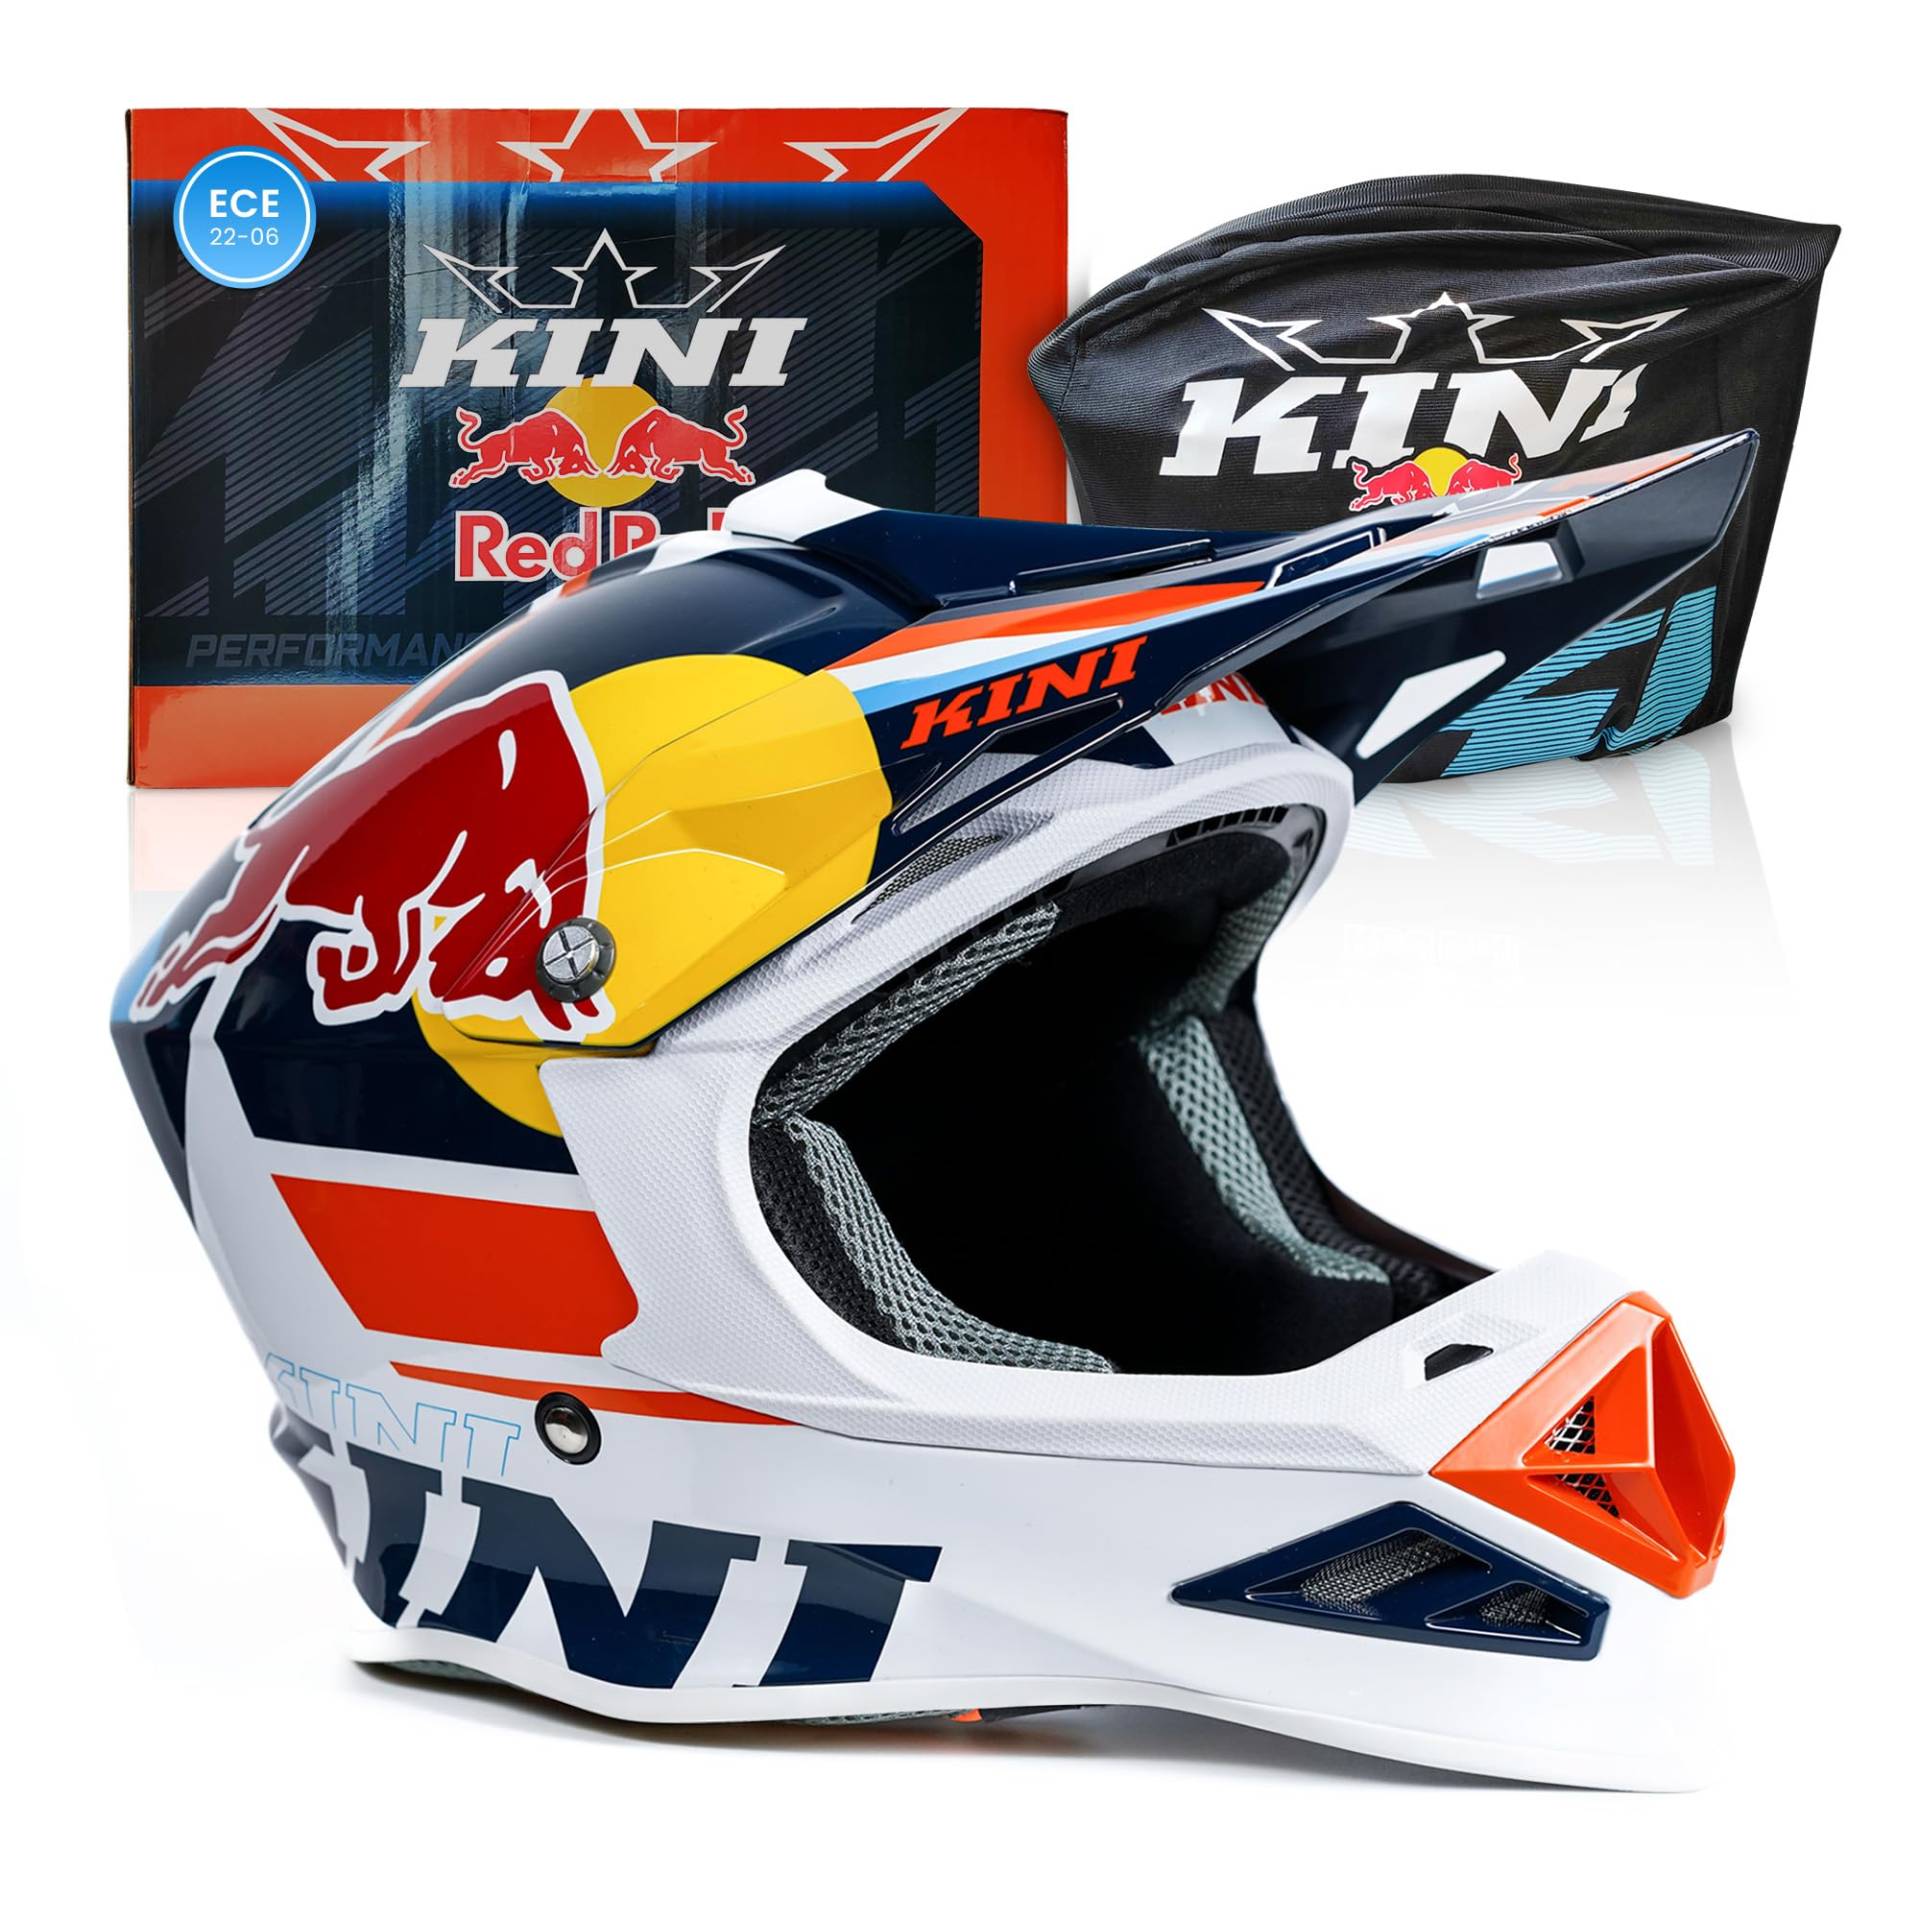 Kini Red Bull Motocross Helm Herren [Premium] Geprüfter Motorradhelm für Renneinsatz - Crosshelm auch als Enduro Helm oder Downhill Helm einsetzbar - Motocross Helm für Brillenträger geeignet XL von Kini